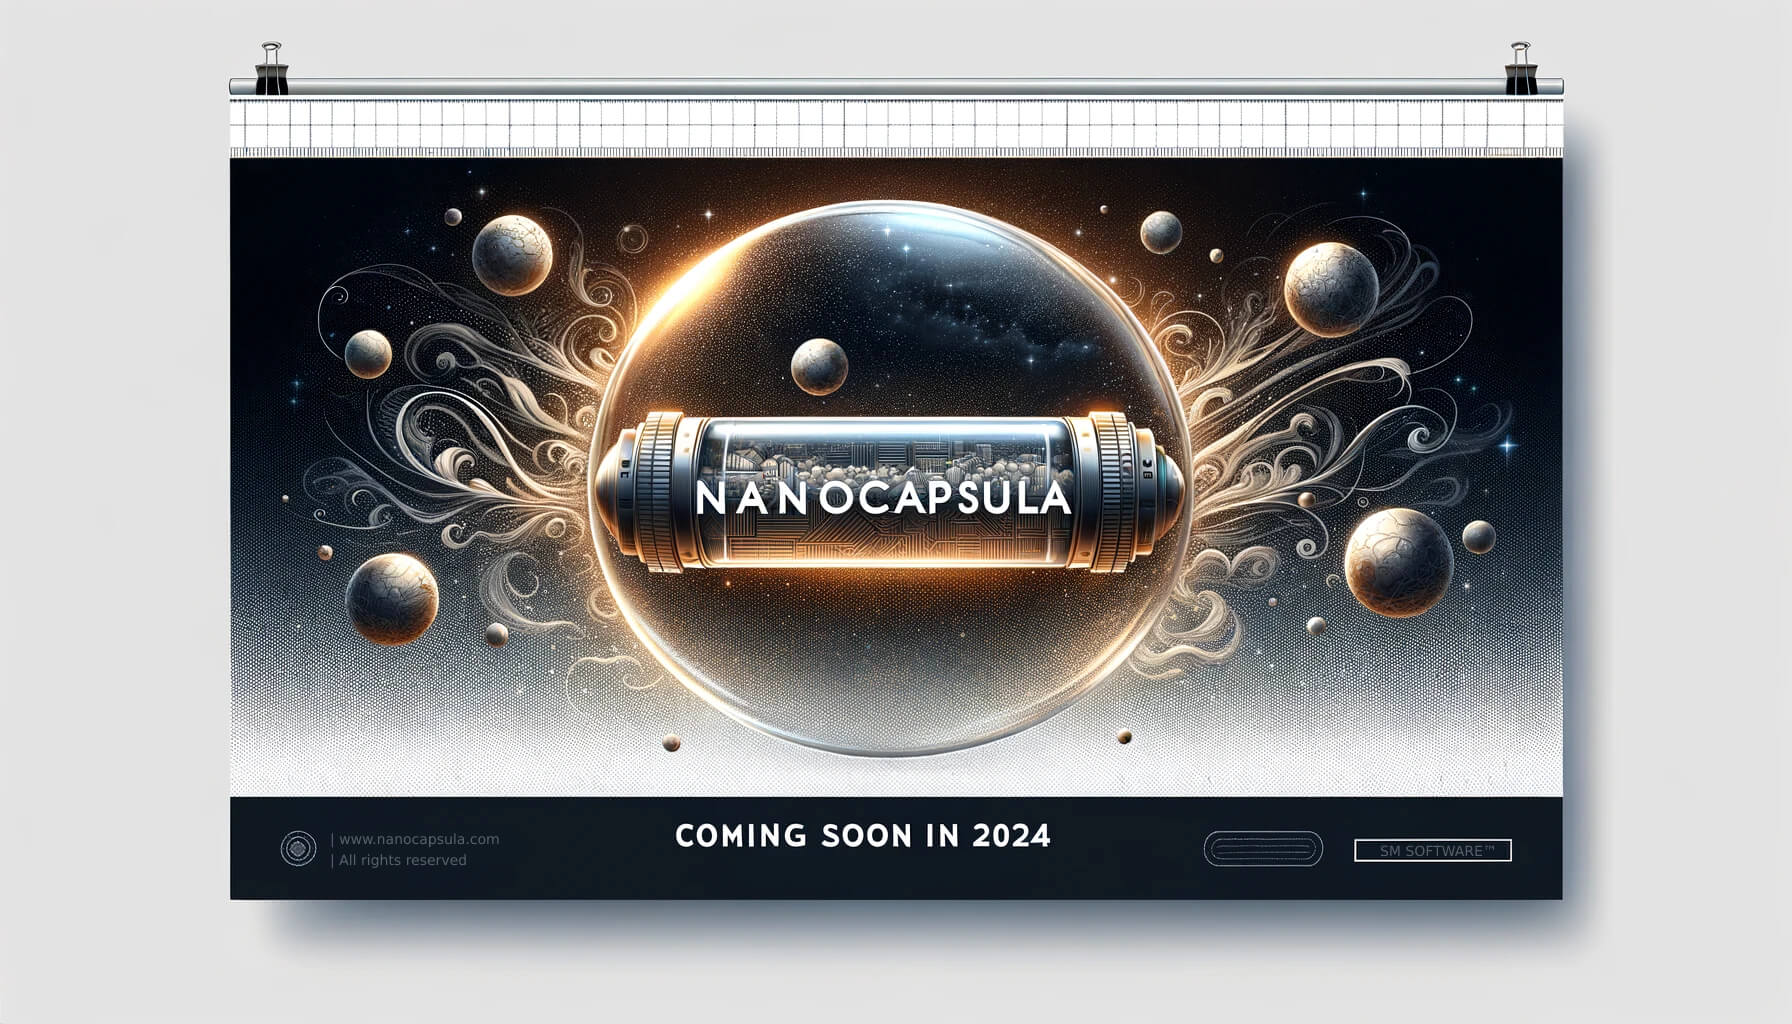 Nanocapsula